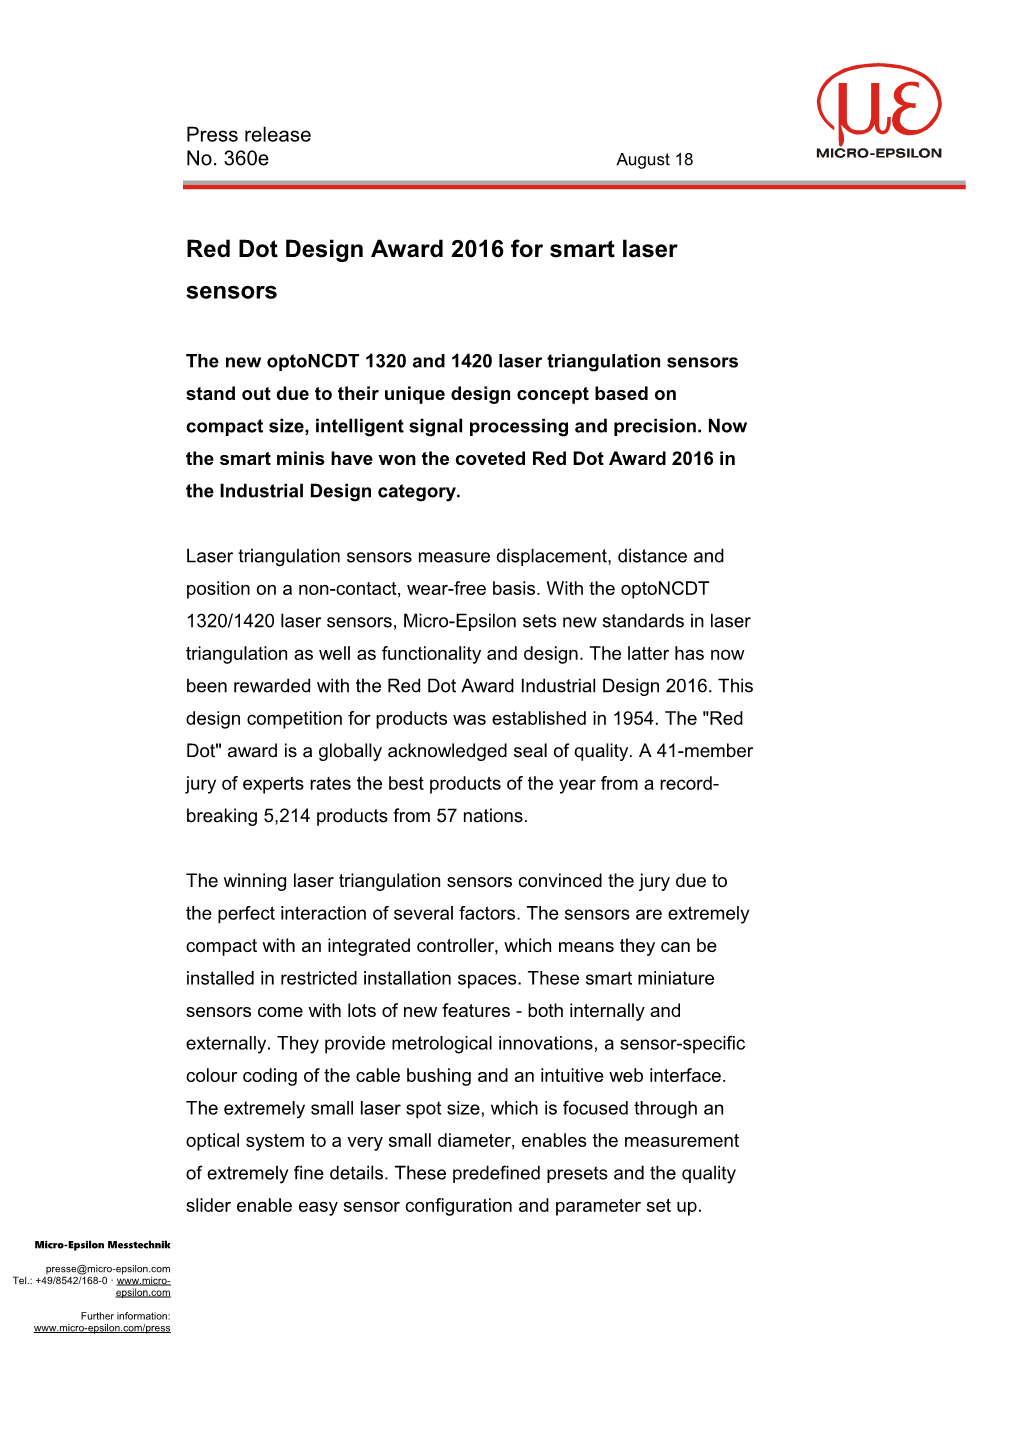 Red Dot Design Award 2016 for Smart Laser Sensors